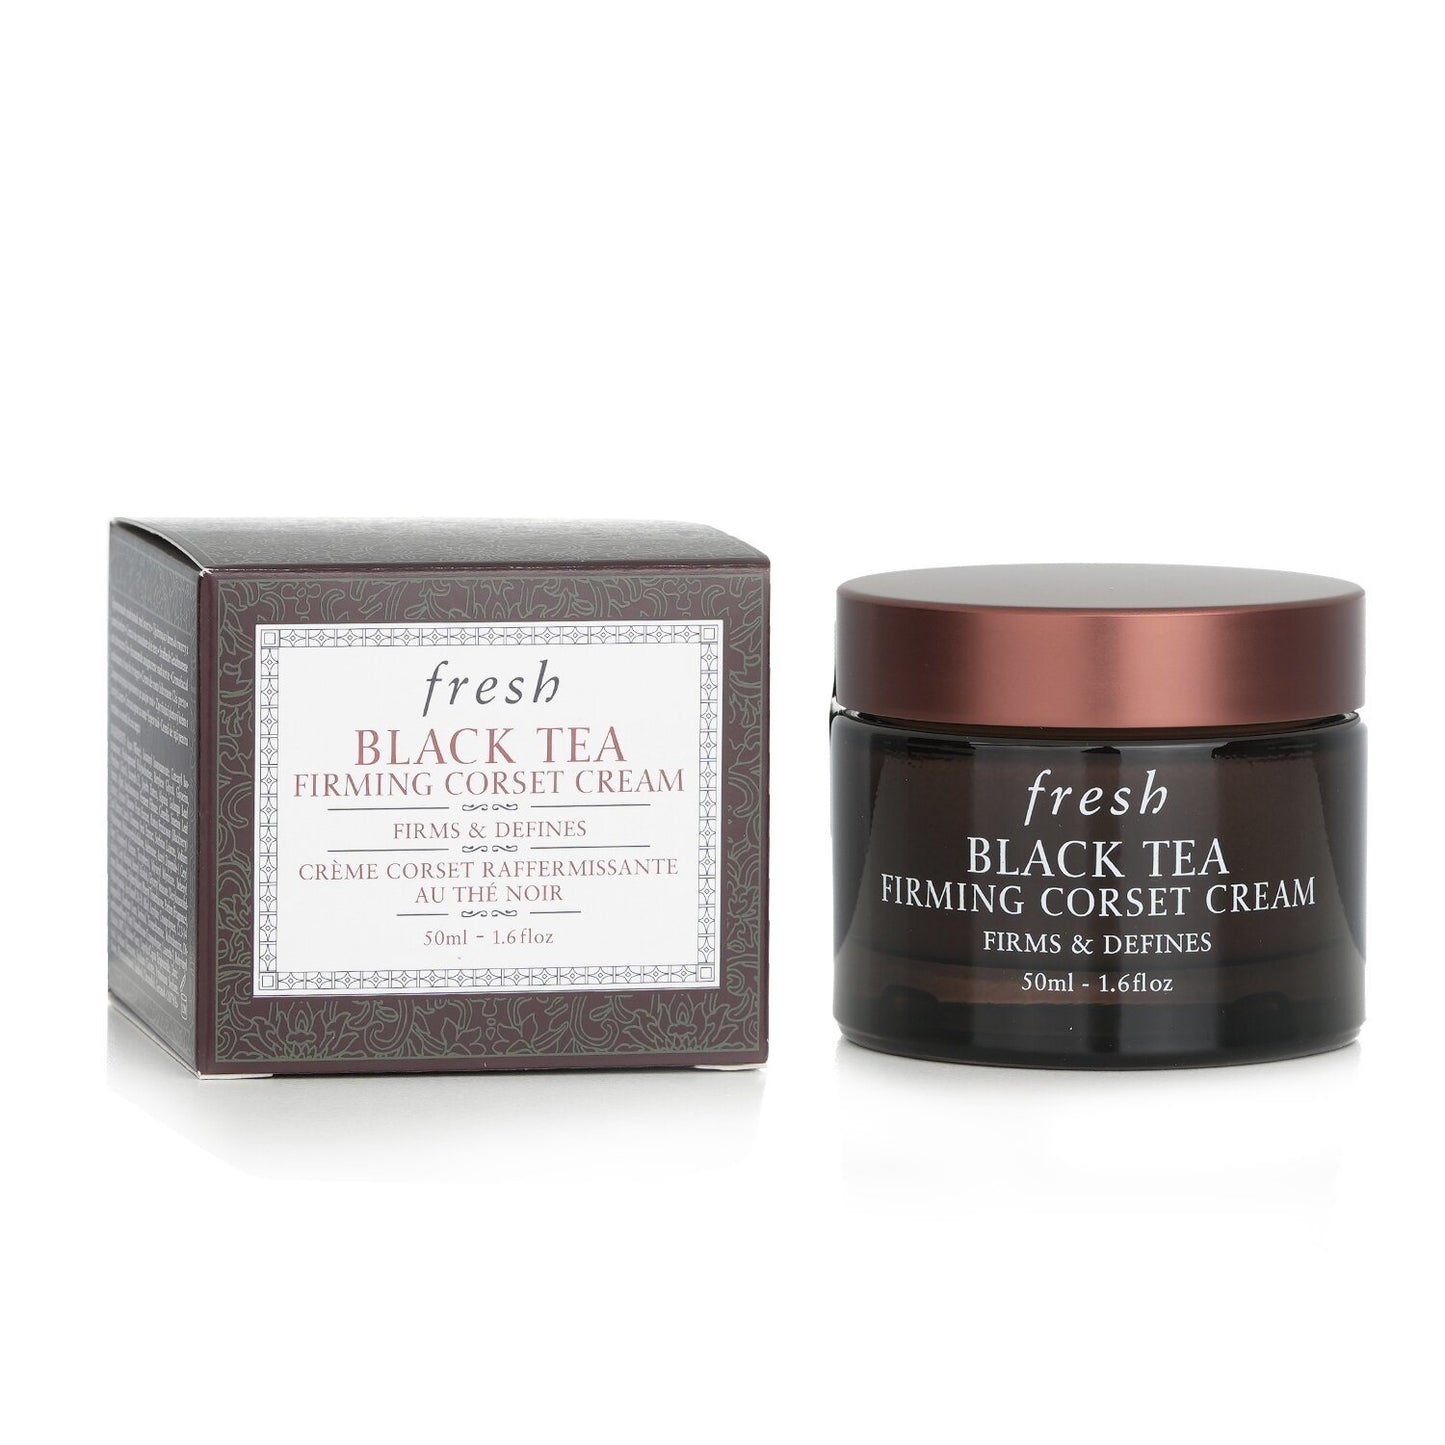 FRESH - Black Tea Firming Corset Cream - For Face & Neck 13203/4211 50ml/1.6oz - lolaluxeshop